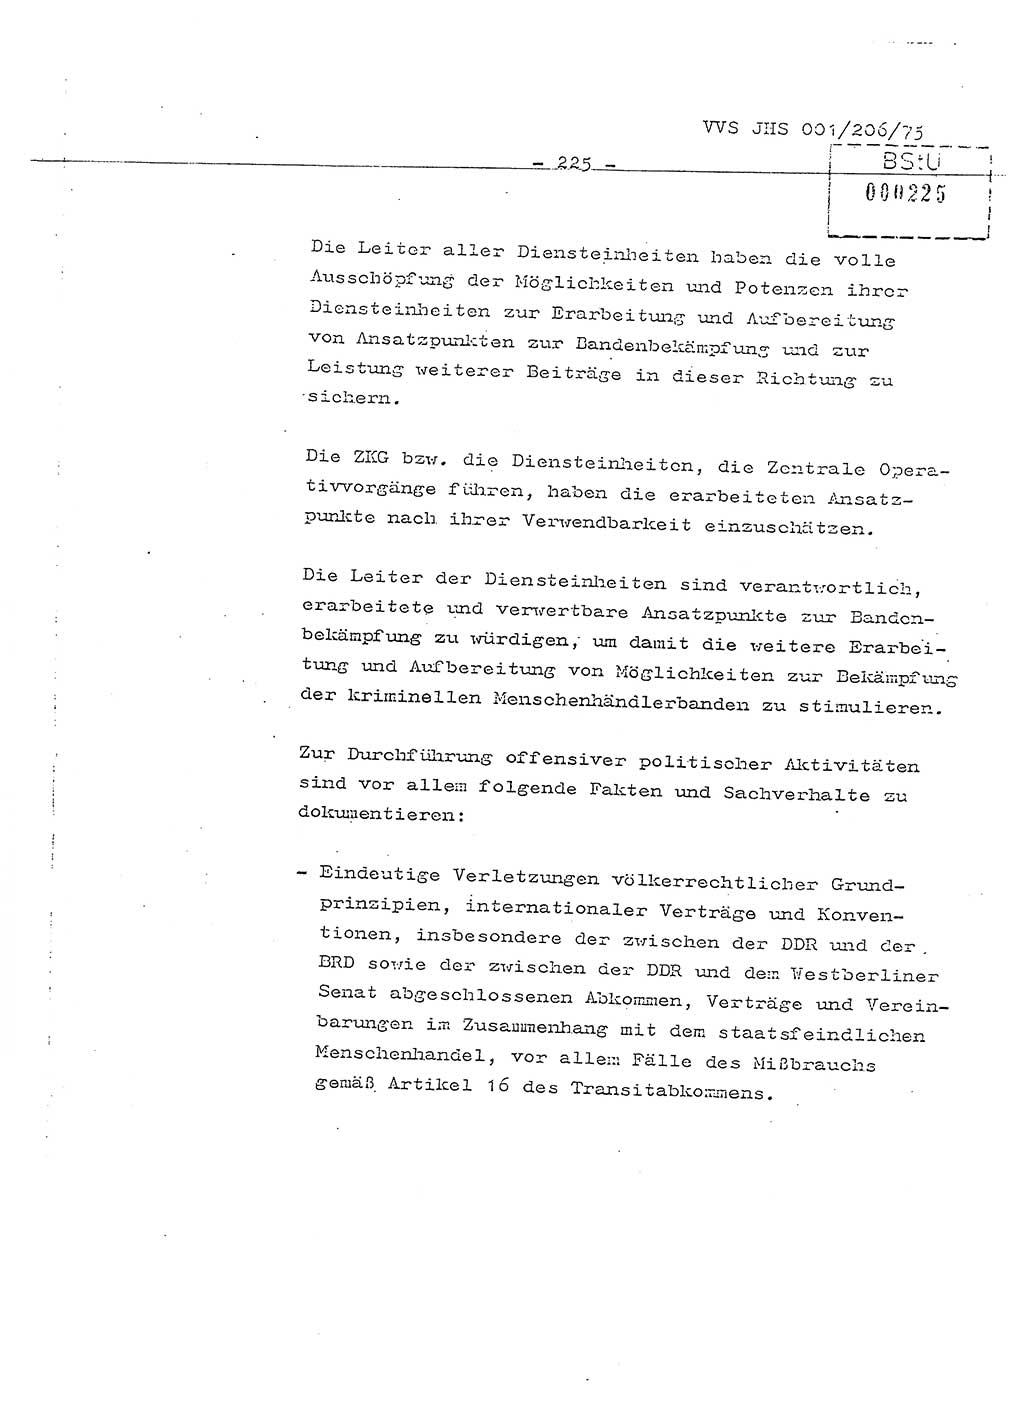 Dissertation Generalmajor Manfred Hummitzsch (Leiter der BV Leipzig), Generalmajor Heinz Fiedler (HA Ⅵ), Oberst Rolf Fister (HA Ⅸ), Ministerium für Staatssicherheit (MfS) [Deutsche Demokratische Republik (DDR)], Juristische Hochschule (JHS), Vertrauliche Verschlußsache (VVS) 001-206/75, Potsdam 1975, Seite 225 (Diss. MfS DDR JHS VVS 001-206/75 1975, S. 225)